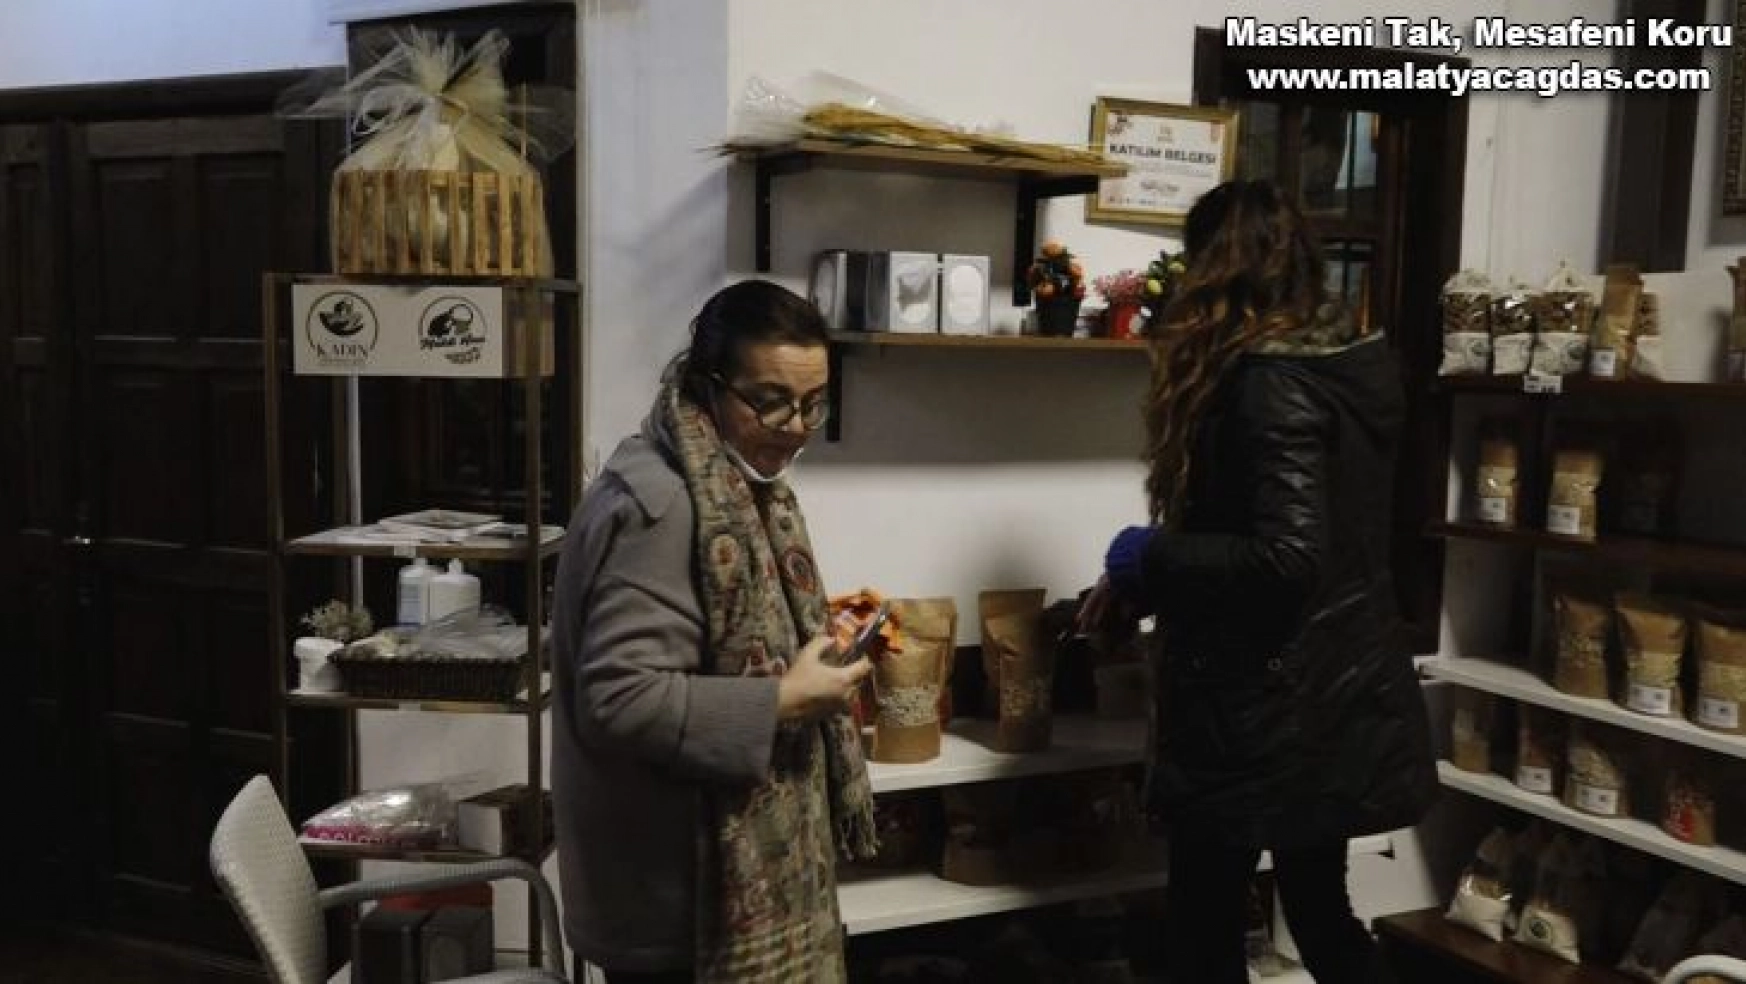 Gurmeler malatya'daki müze ve el işi ürünlere hayran kaldı